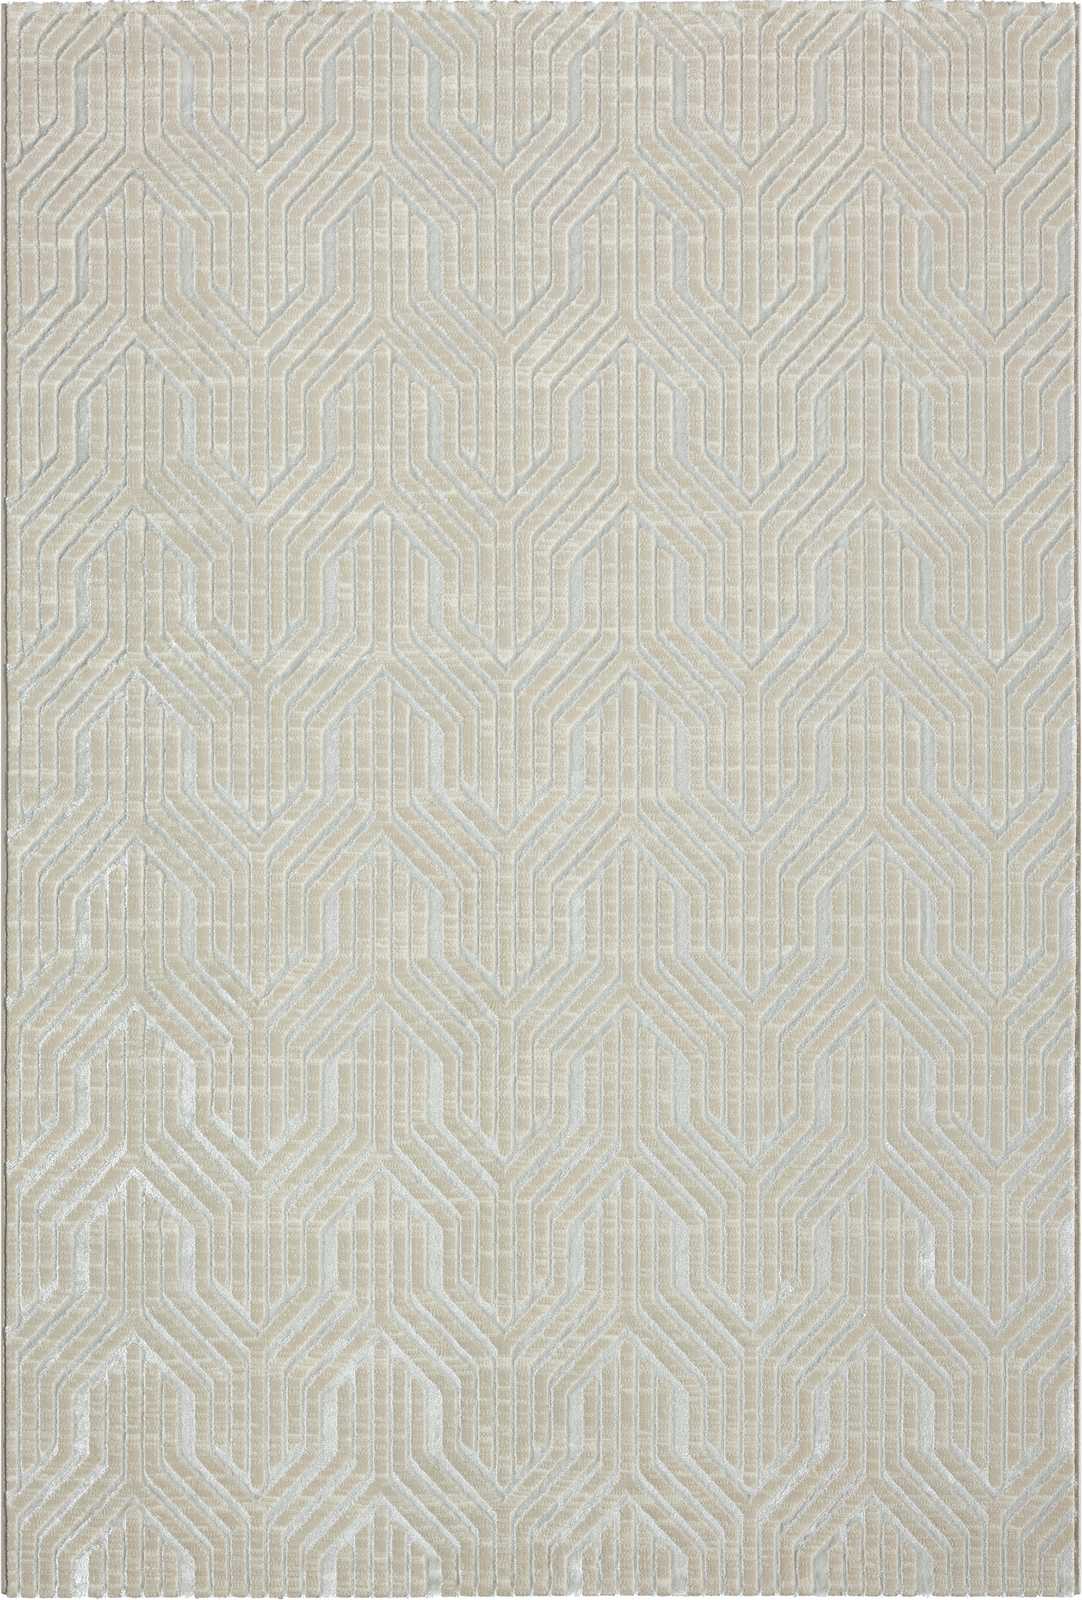             Soft pile carpet in cream - 200 x 140 cm
        